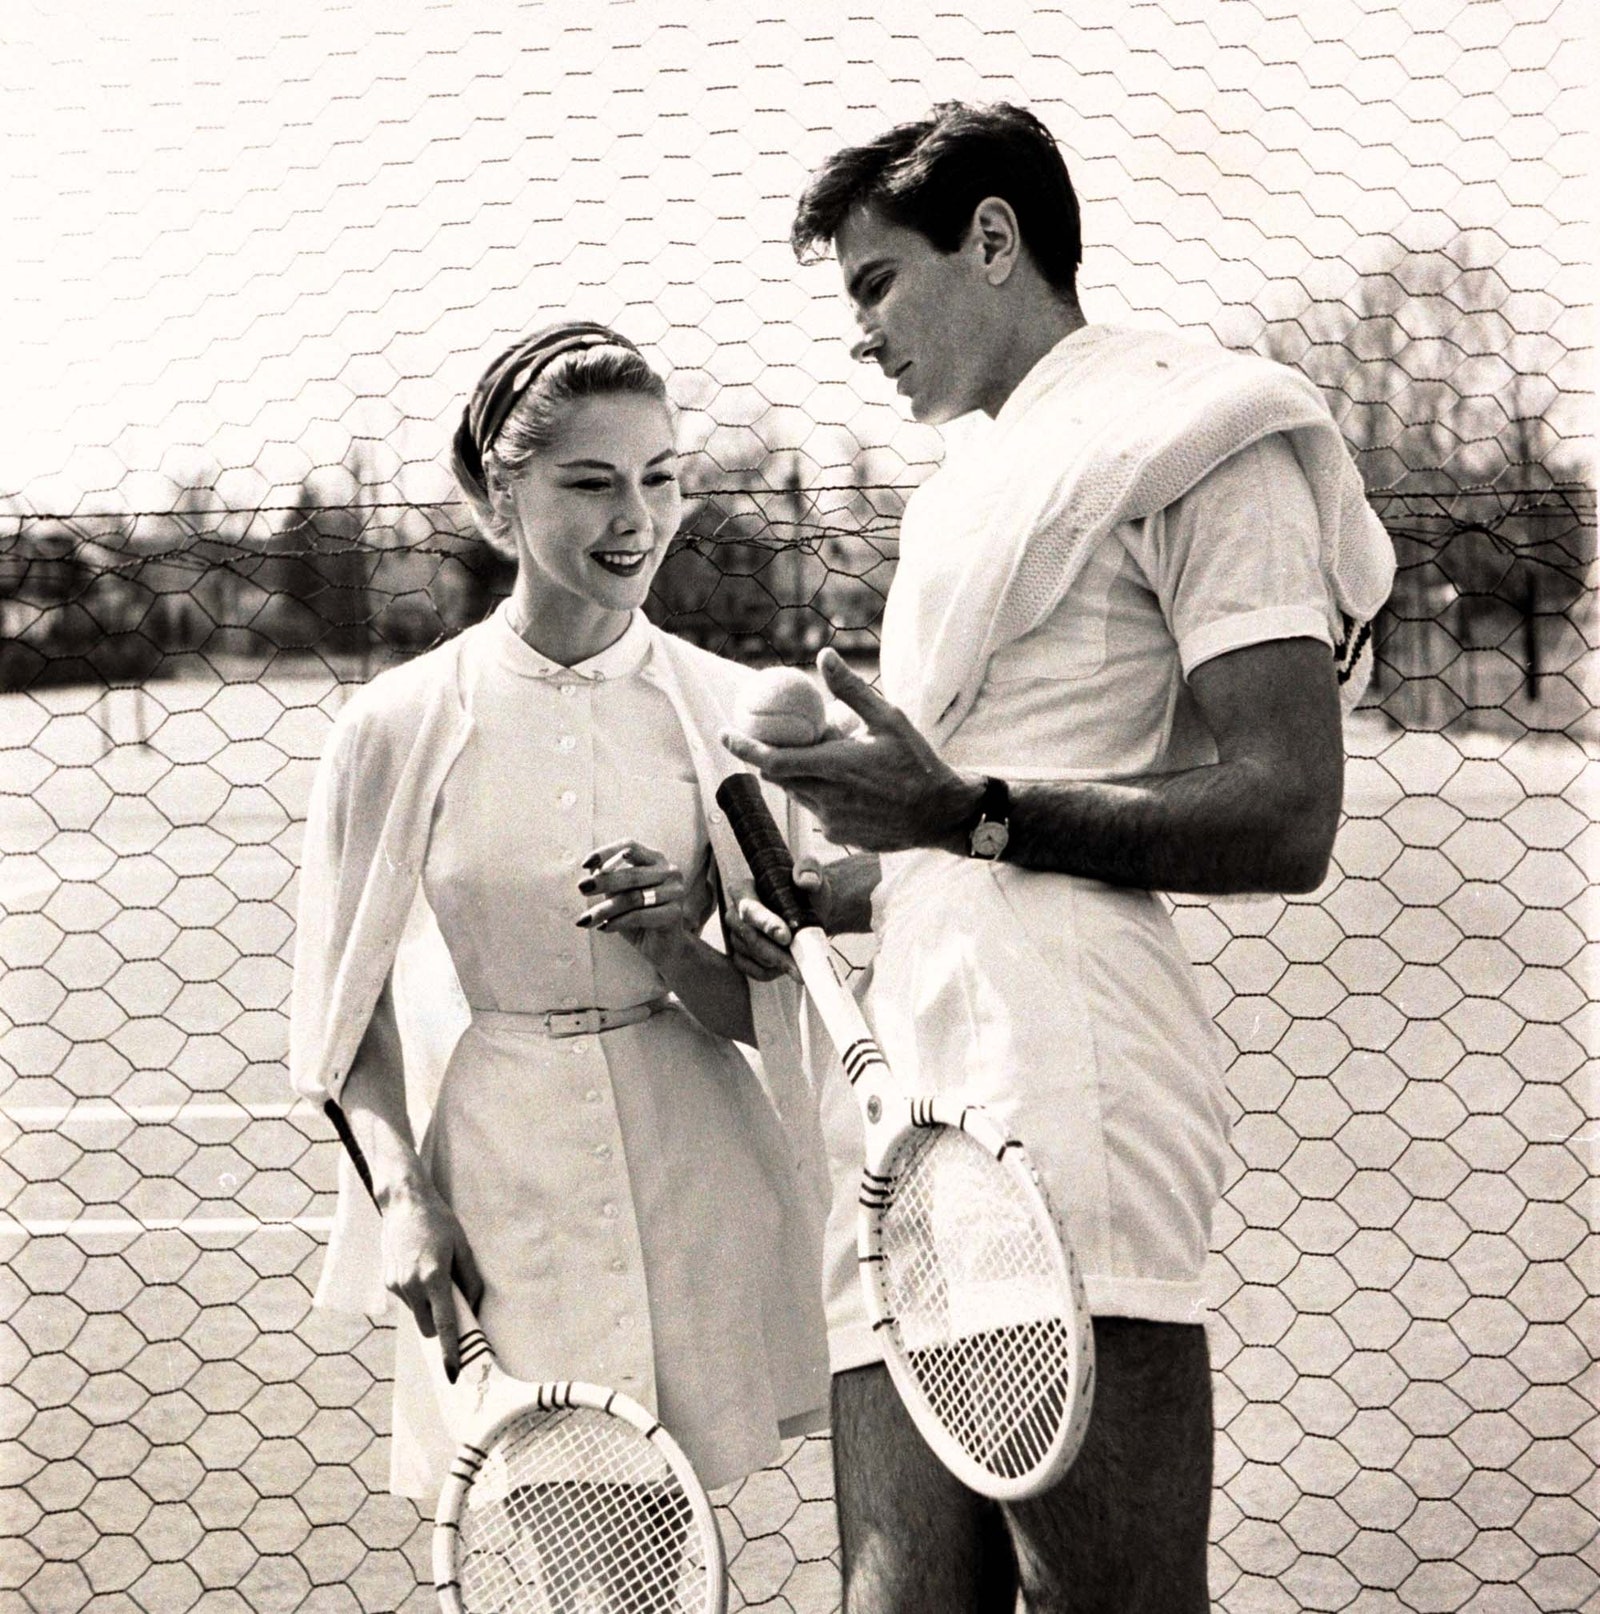 El crdigan es una de las piezas estrella del uniforme del tenis como muestra esta imagen de 1954.